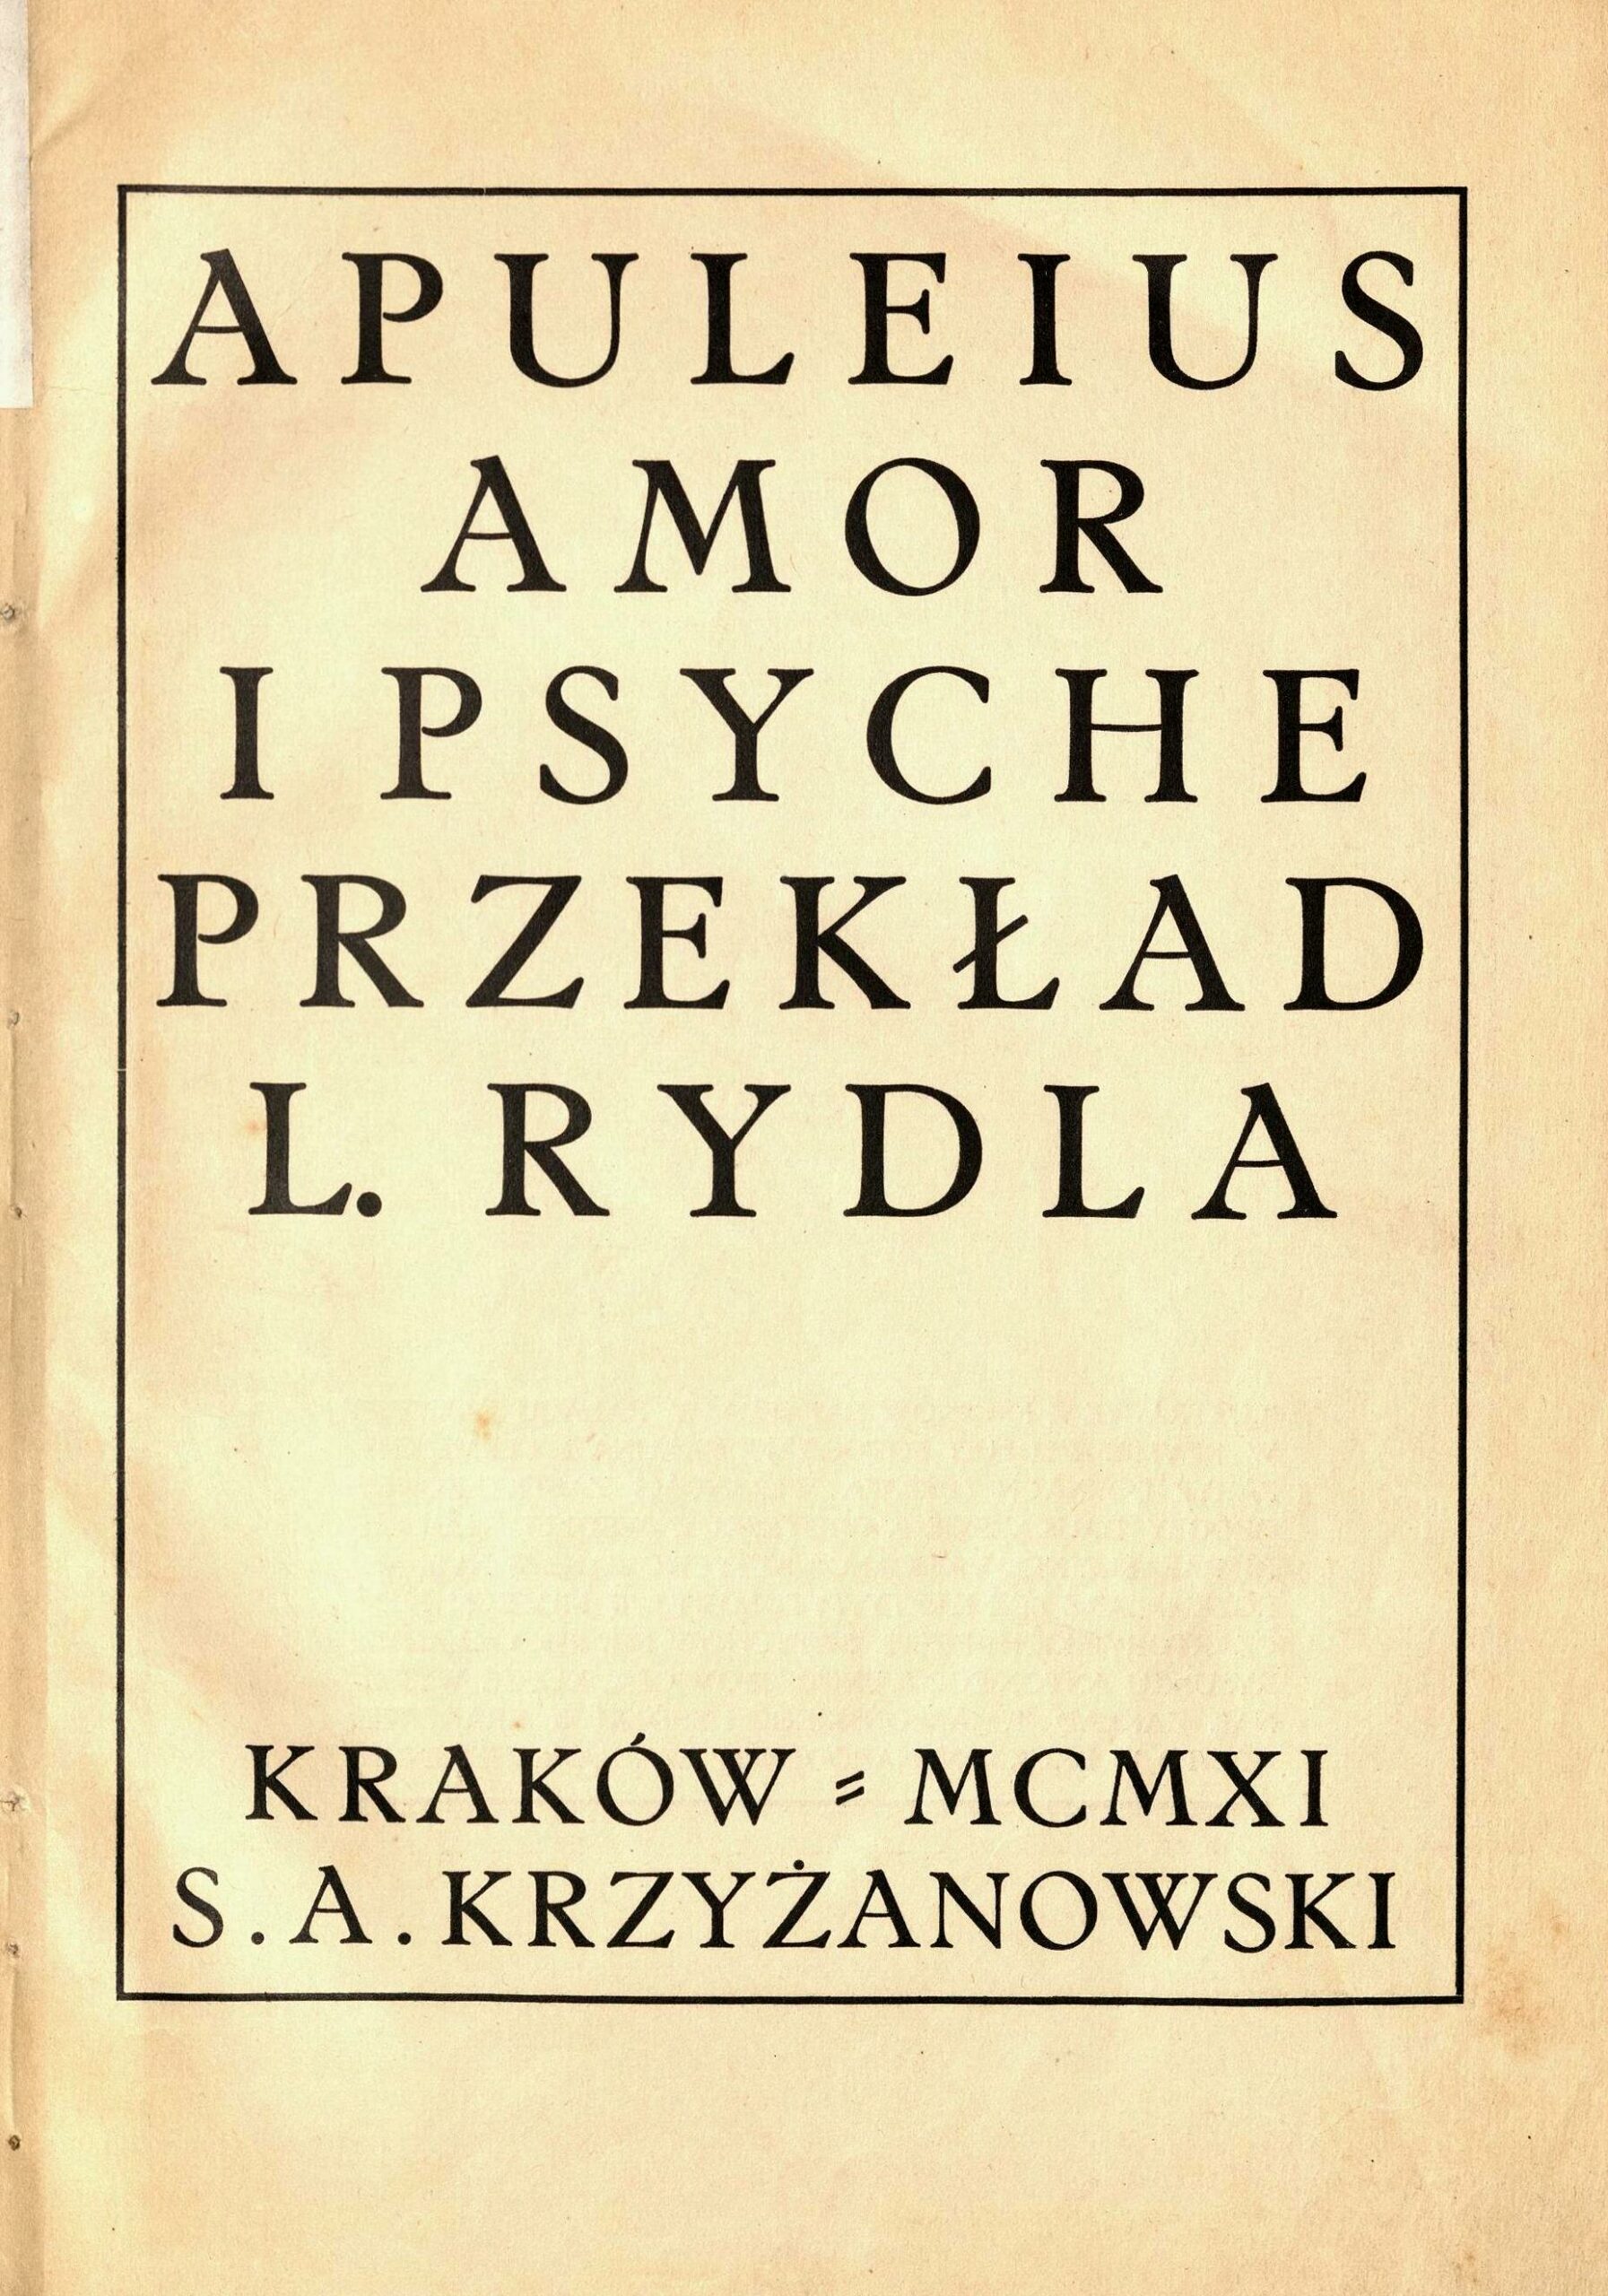 Jeden z najważniejszych przekładów dzieła Apulejusza na język polski